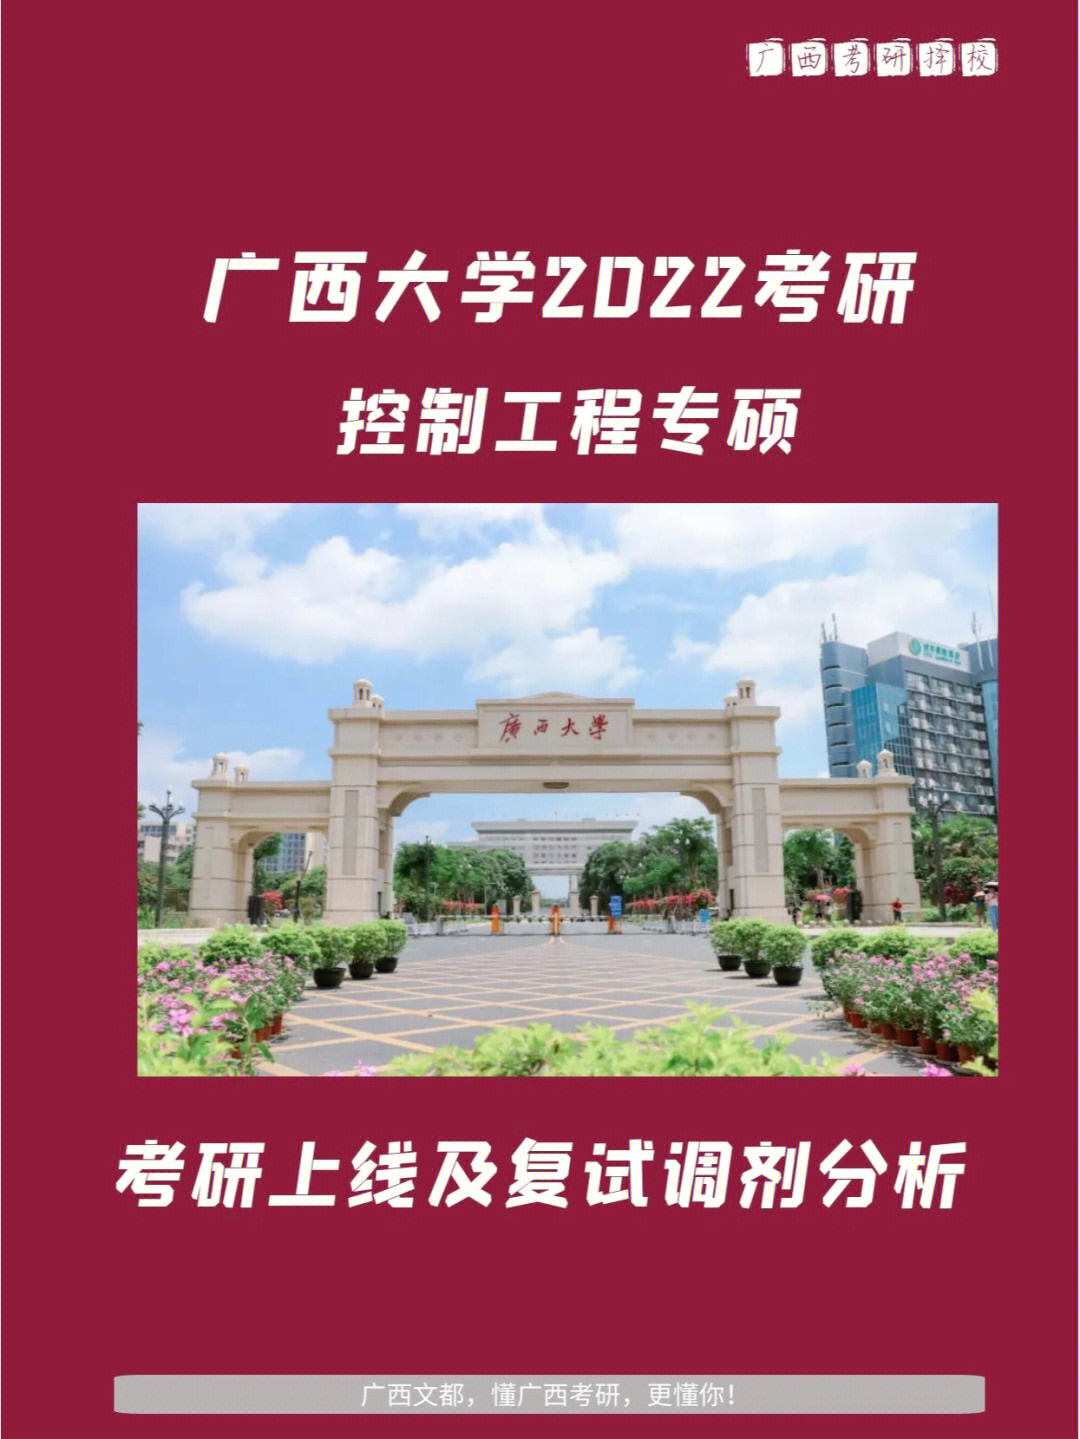 广西大学控制工程2022考研招生录取情况